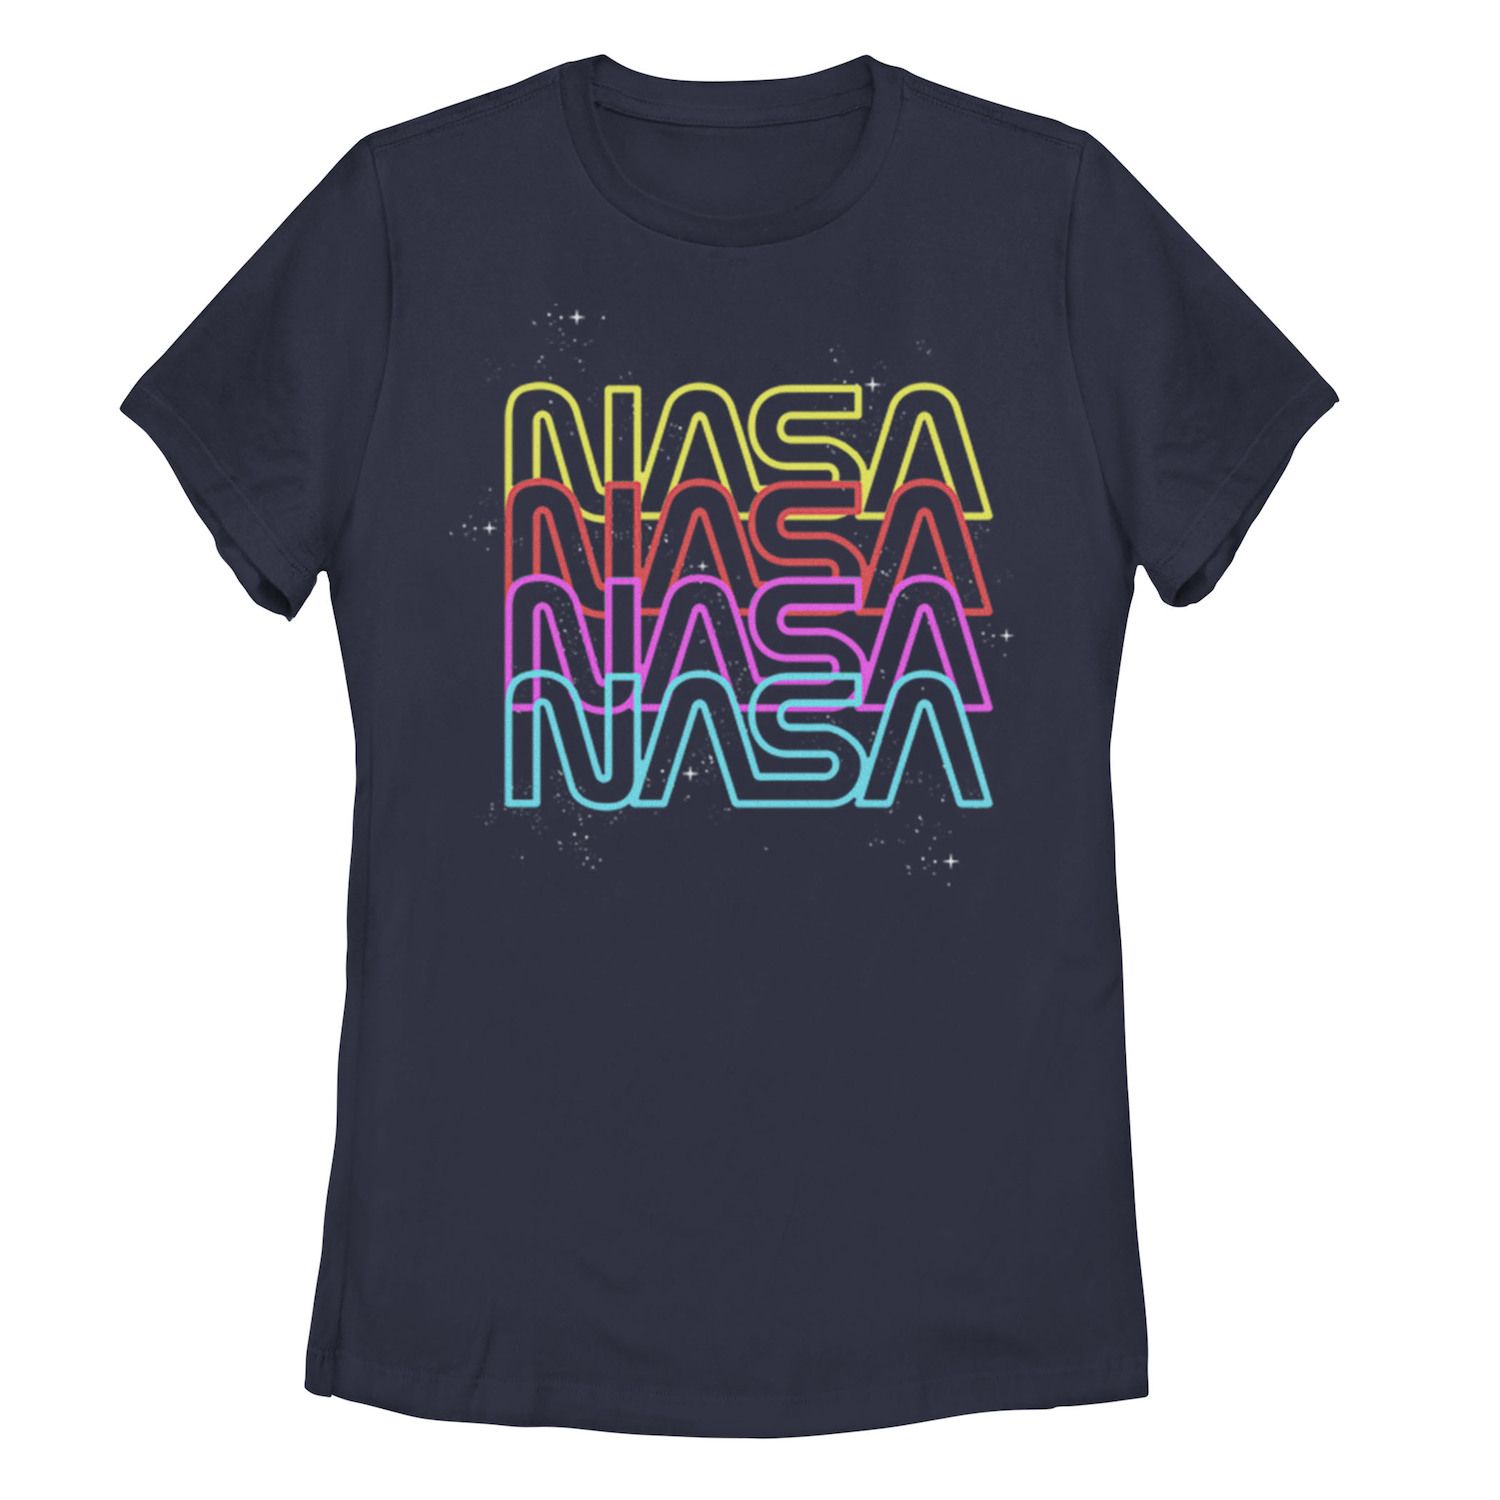 Футболка с неоновым радужным повторяющимся текстовым логотипом NASA для юниоров Licensed Character